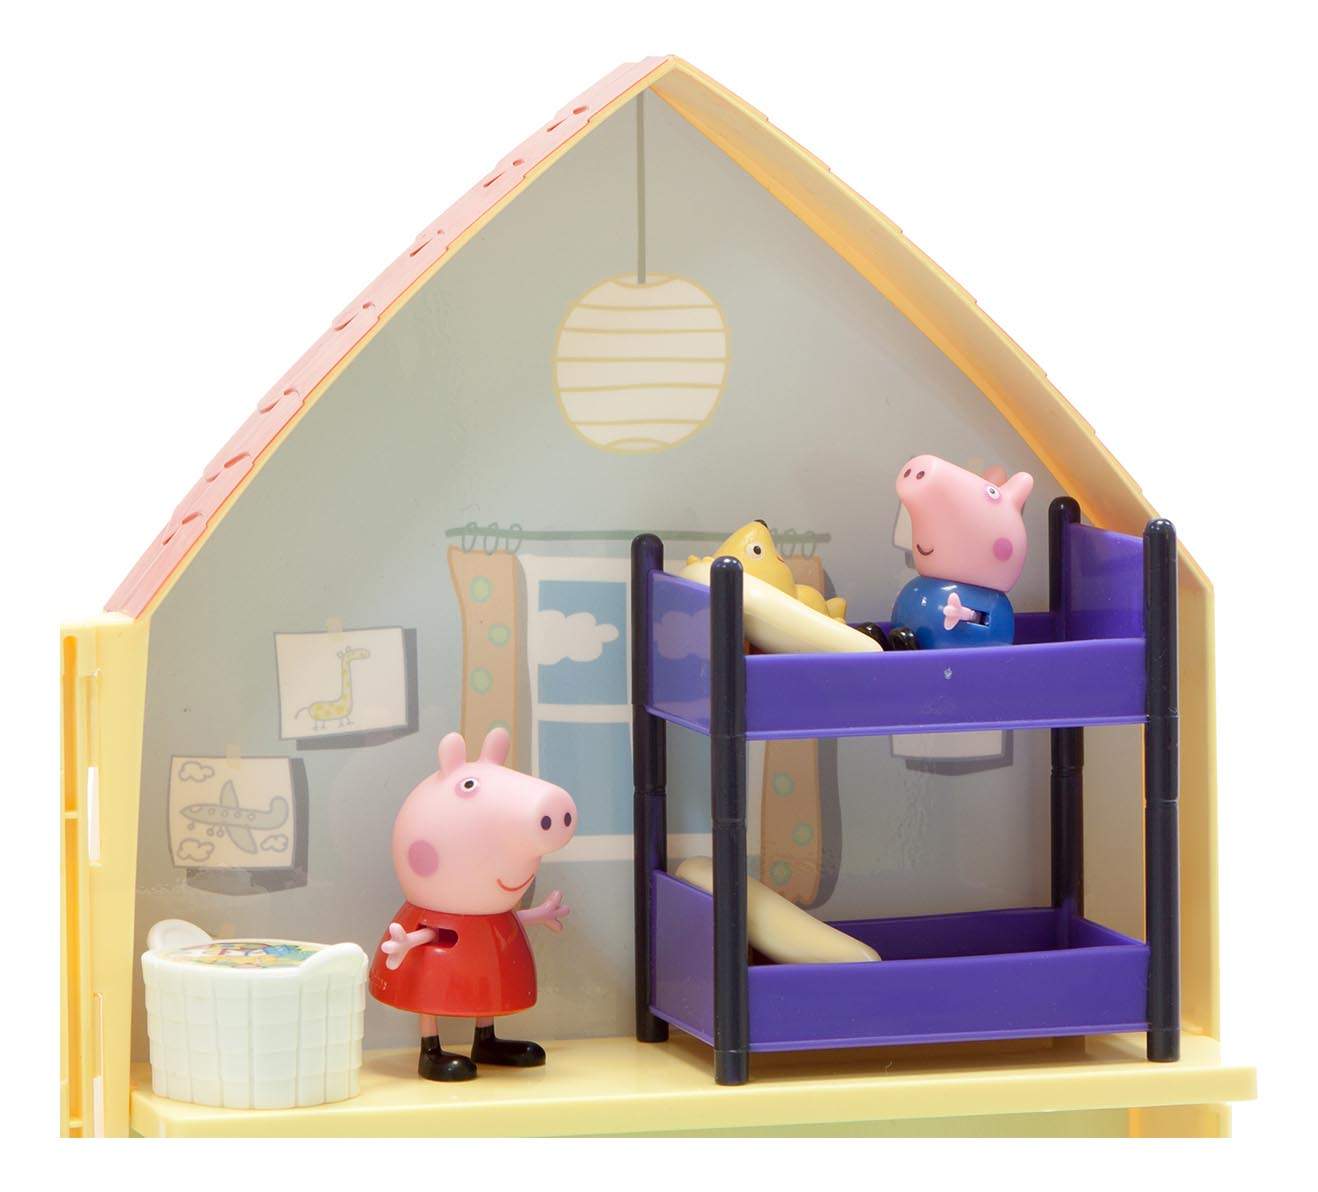 Фотки свинки пеппы с домом